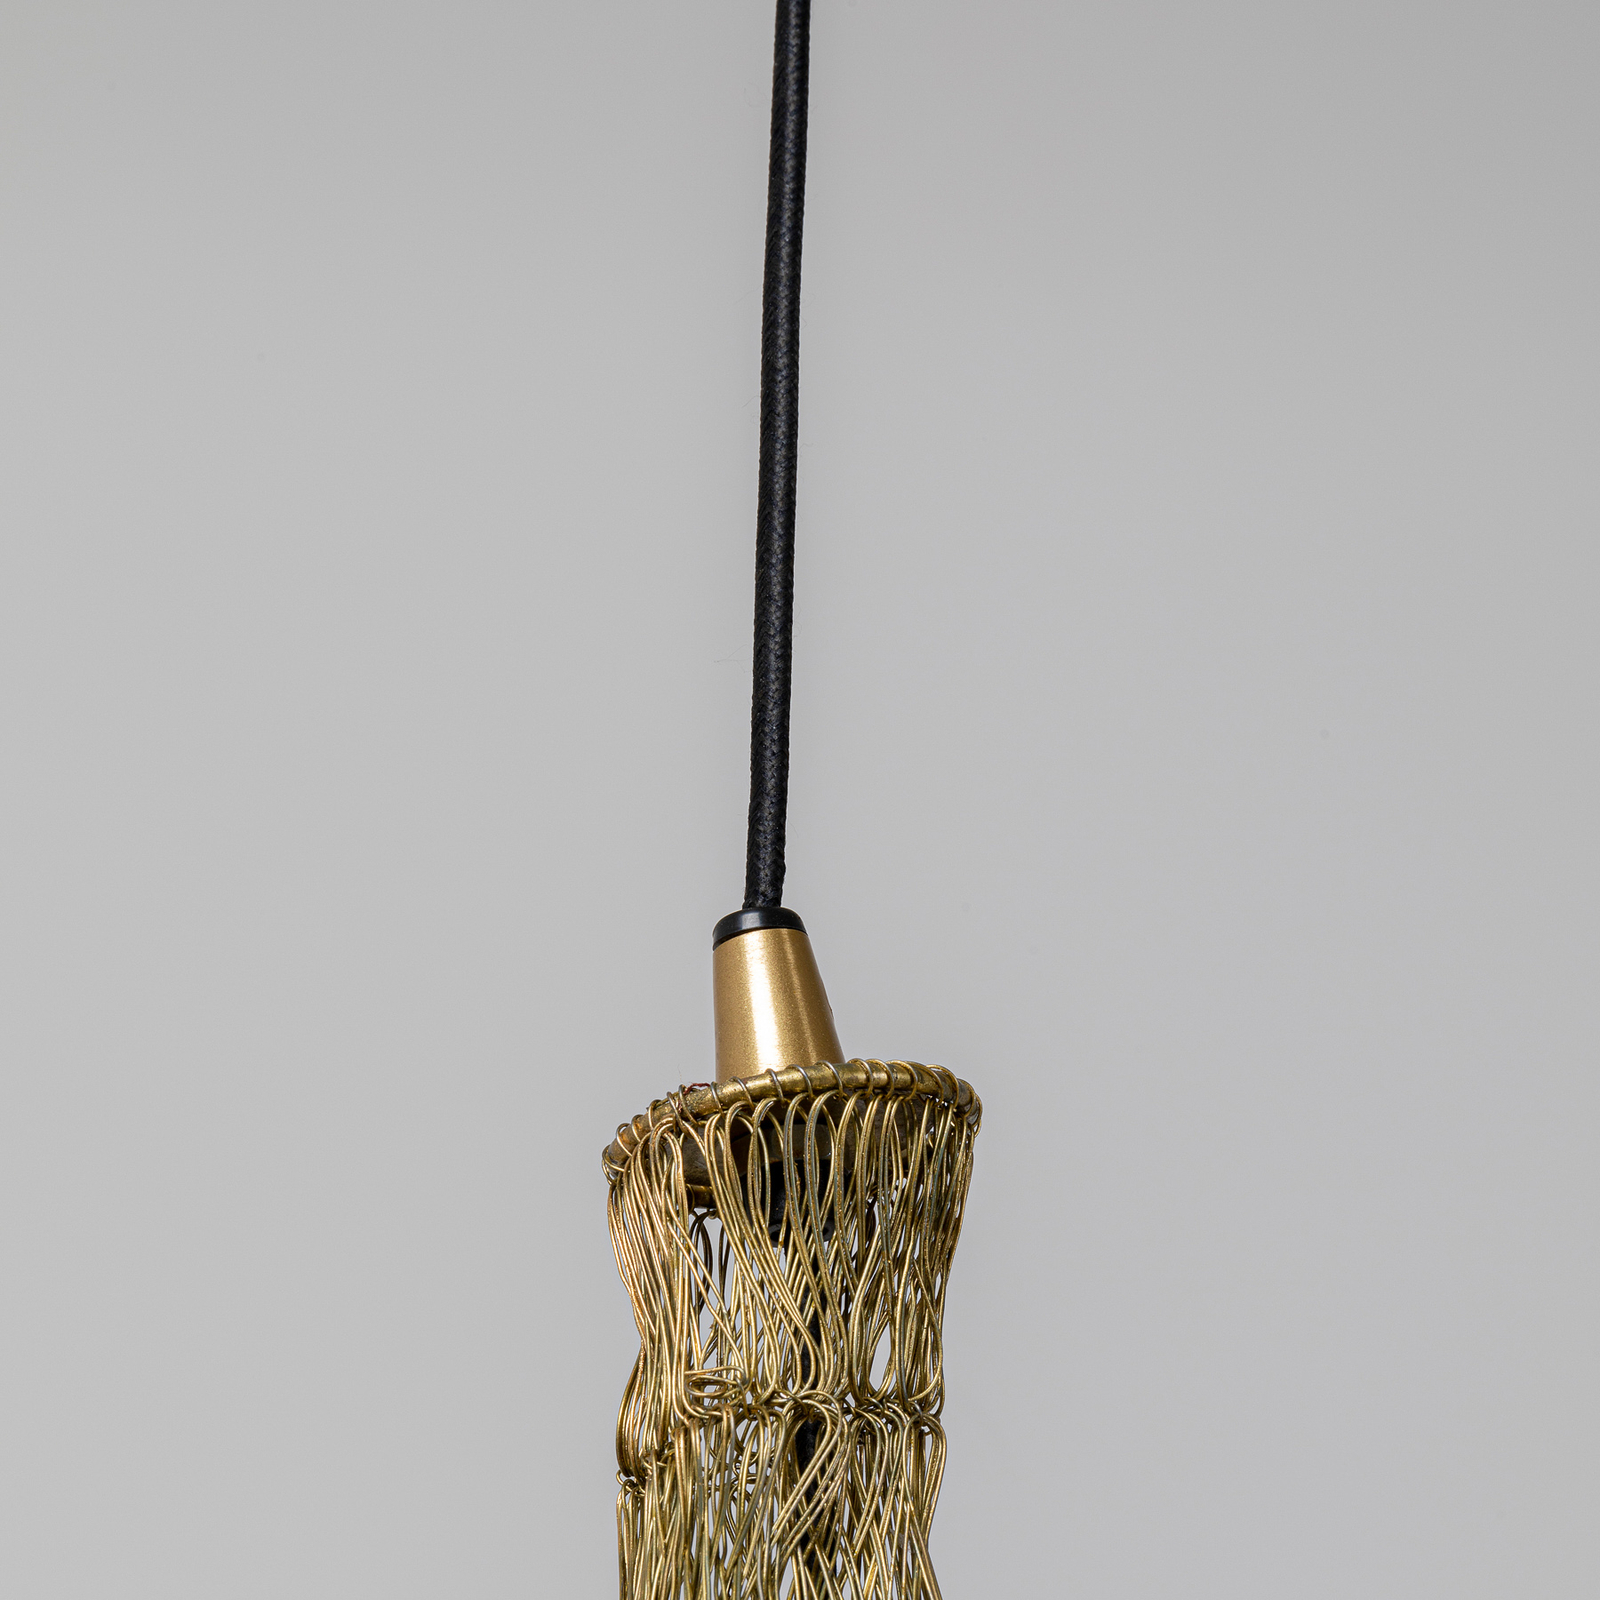 KARE Cocoon lámpara colgante oro, Ø 51 cm